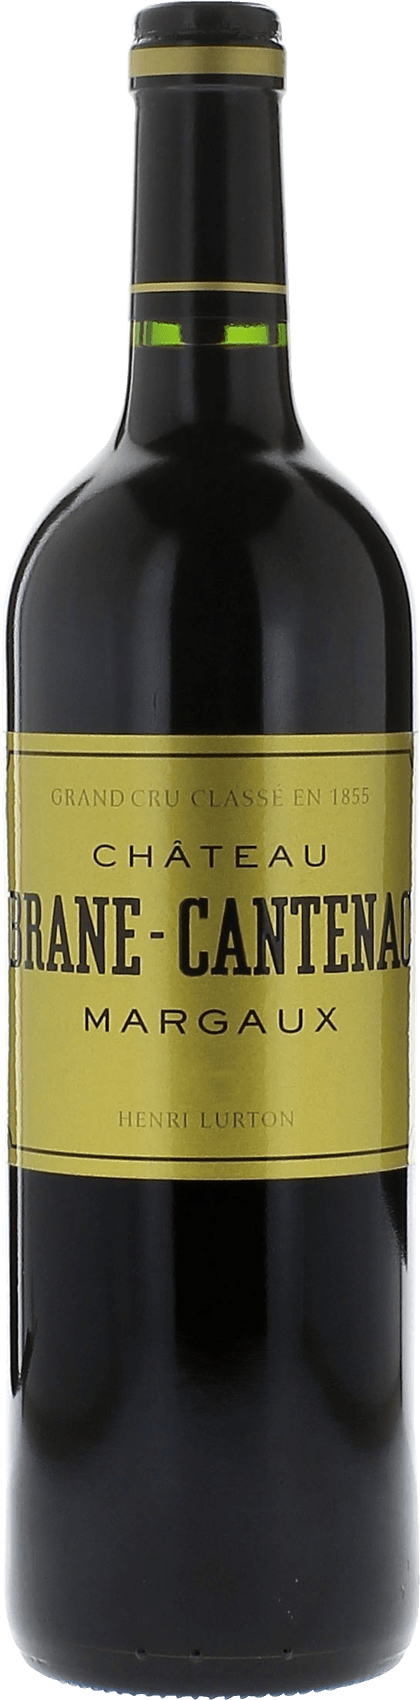 Brane cantenac 1983 2me Grand cru class Margaux, Bordeaux rouge